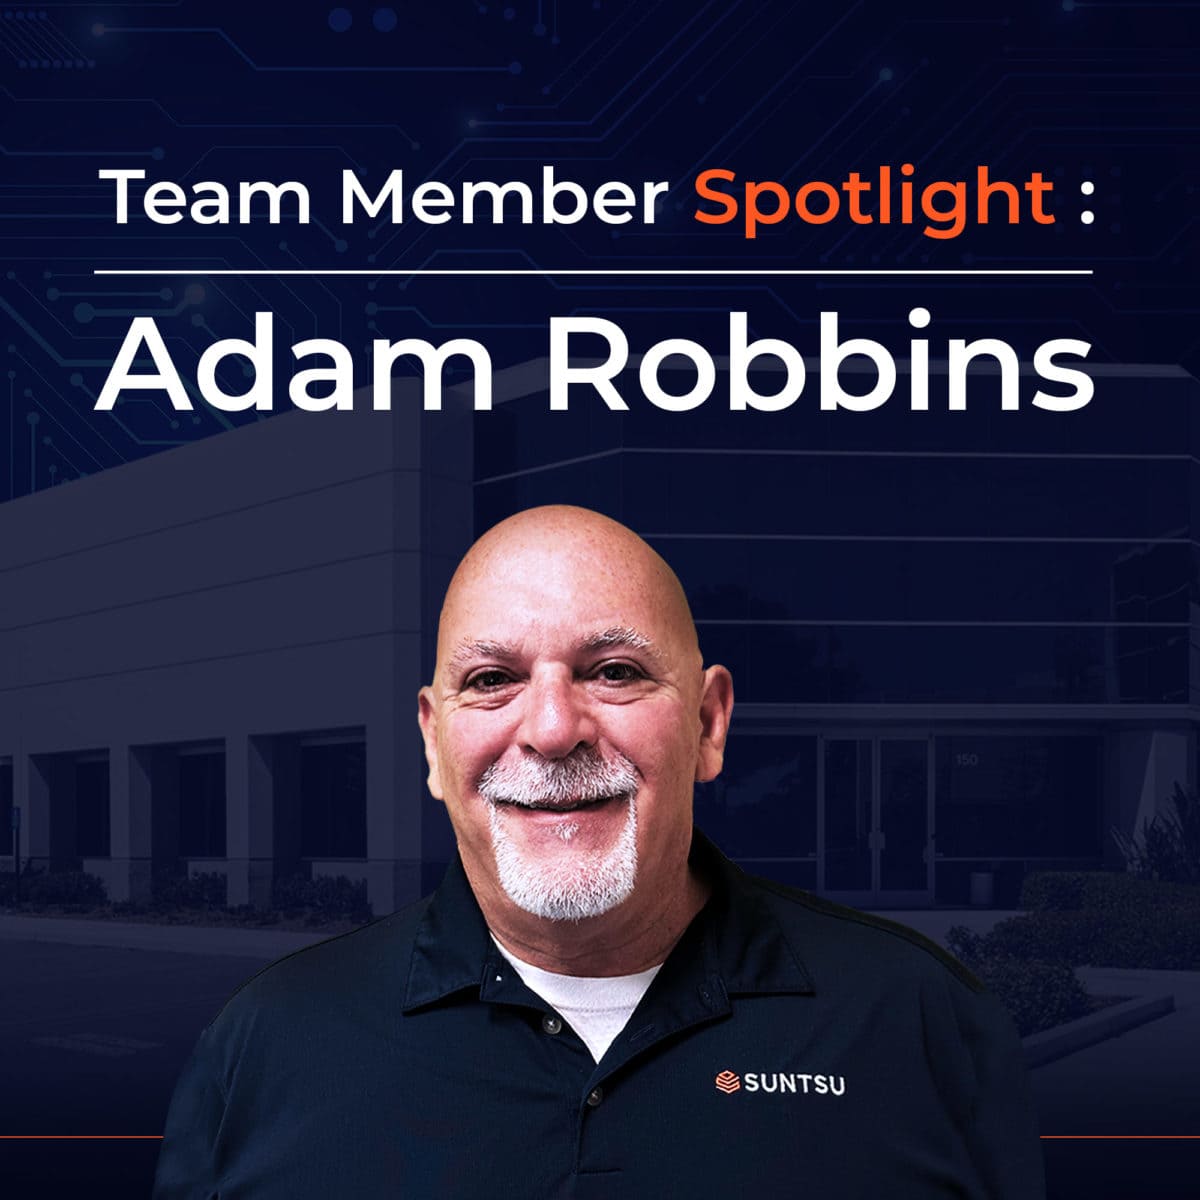 Team Member Spotlight: Adam Robbins